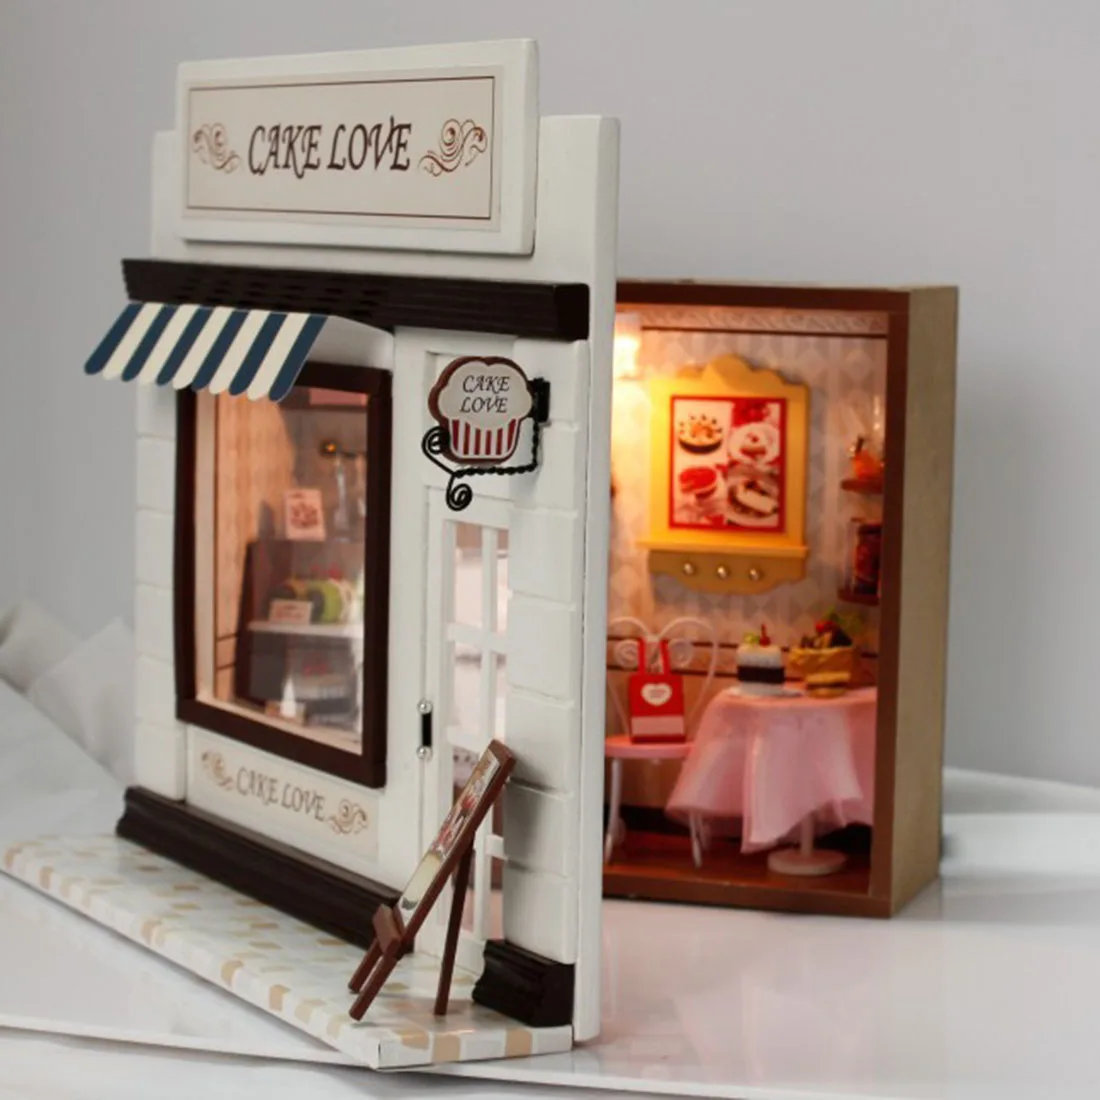 5 стилей креативный DIY кукольный домик Каса 3D Деревянный Кукольный дом, игрушки модель Miniatura с игрушечная мебель для детей Рождественский подарок